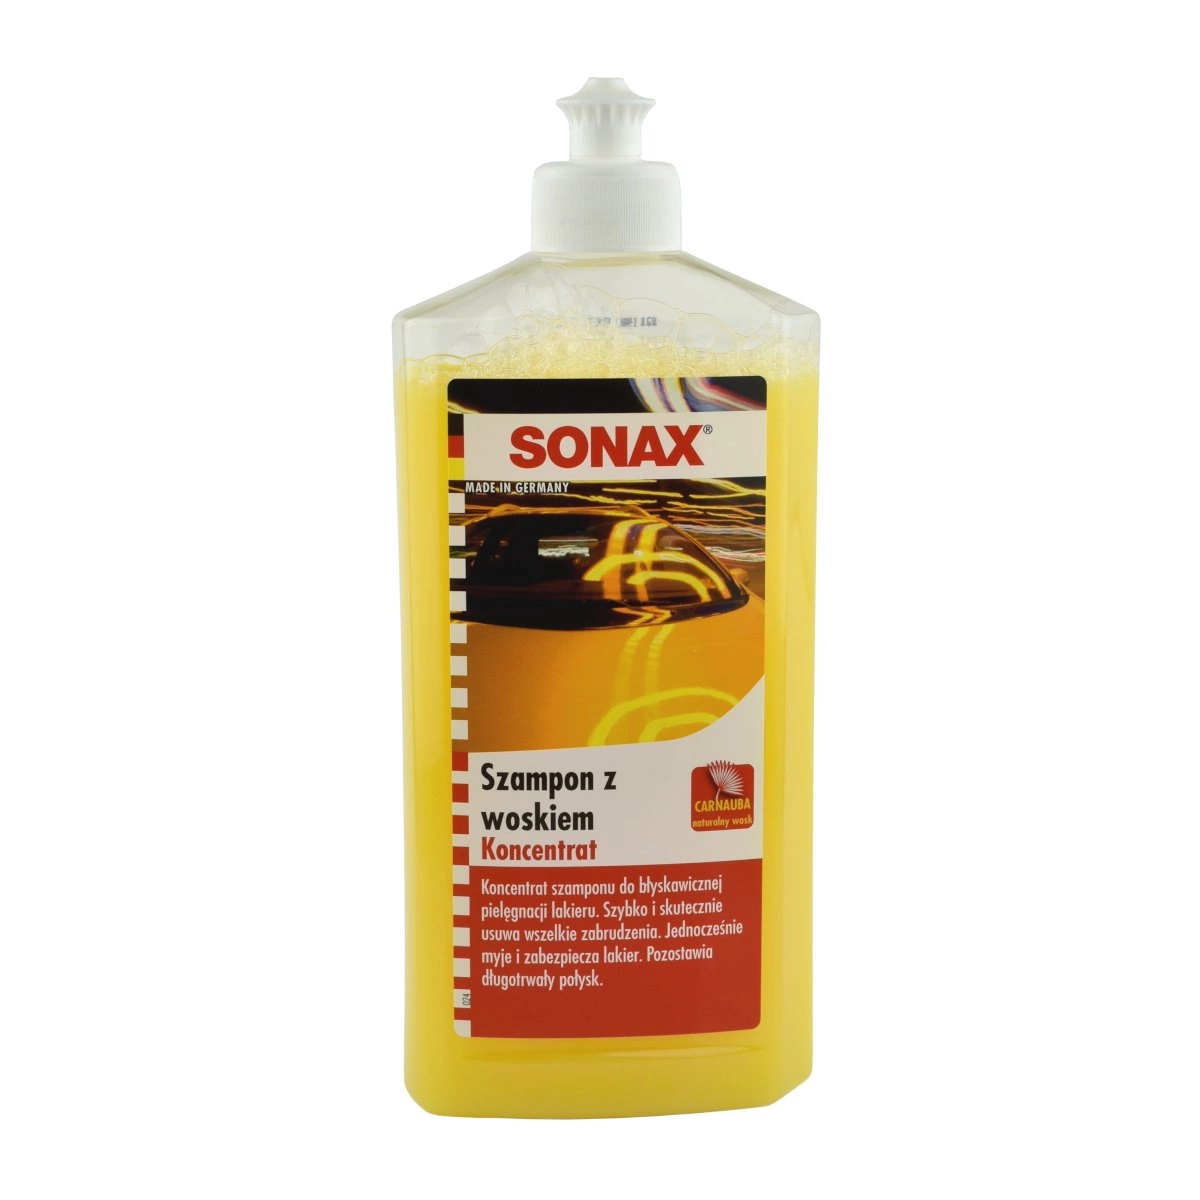 sonax szampon samochodowy koncentrat